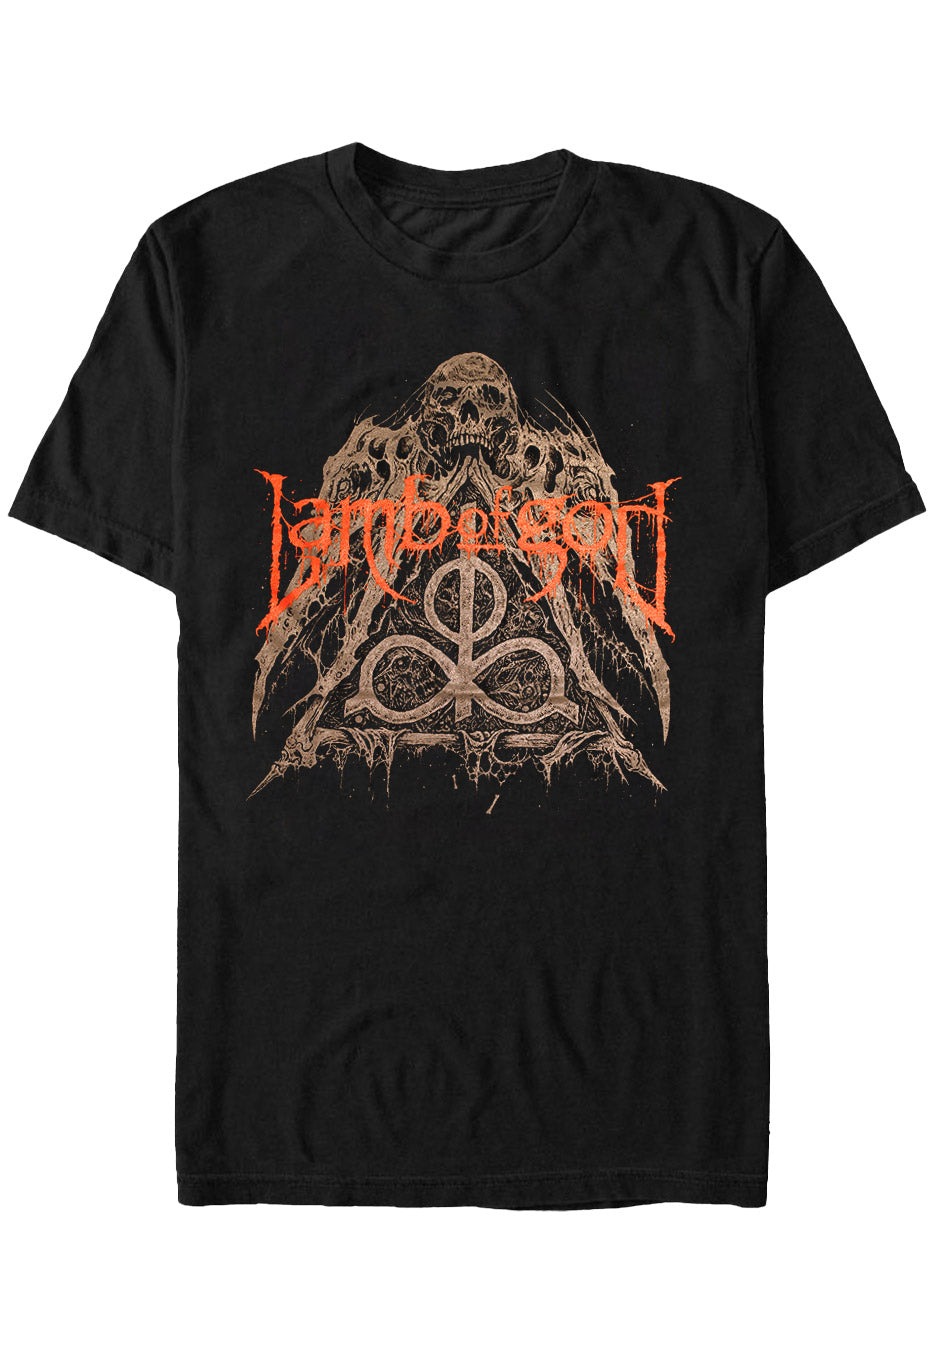 Lamb Of God - Skull Pyramid - T-Shirt